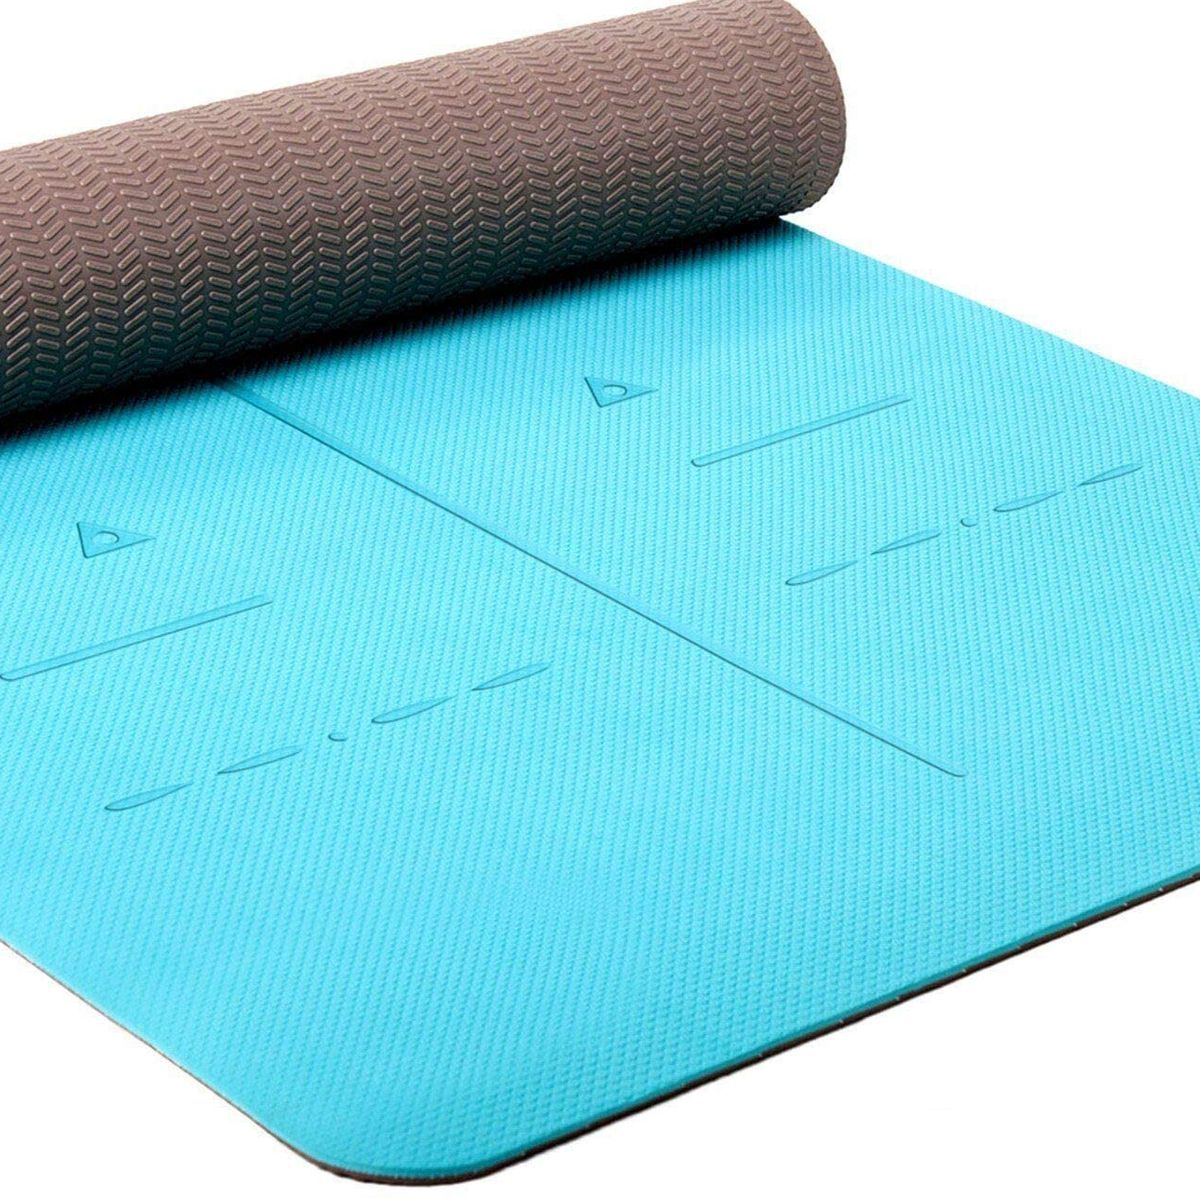 13 Best Yoga Mats On 2022 The, Best Non Slip Exercise Mat For Hardwood Floors